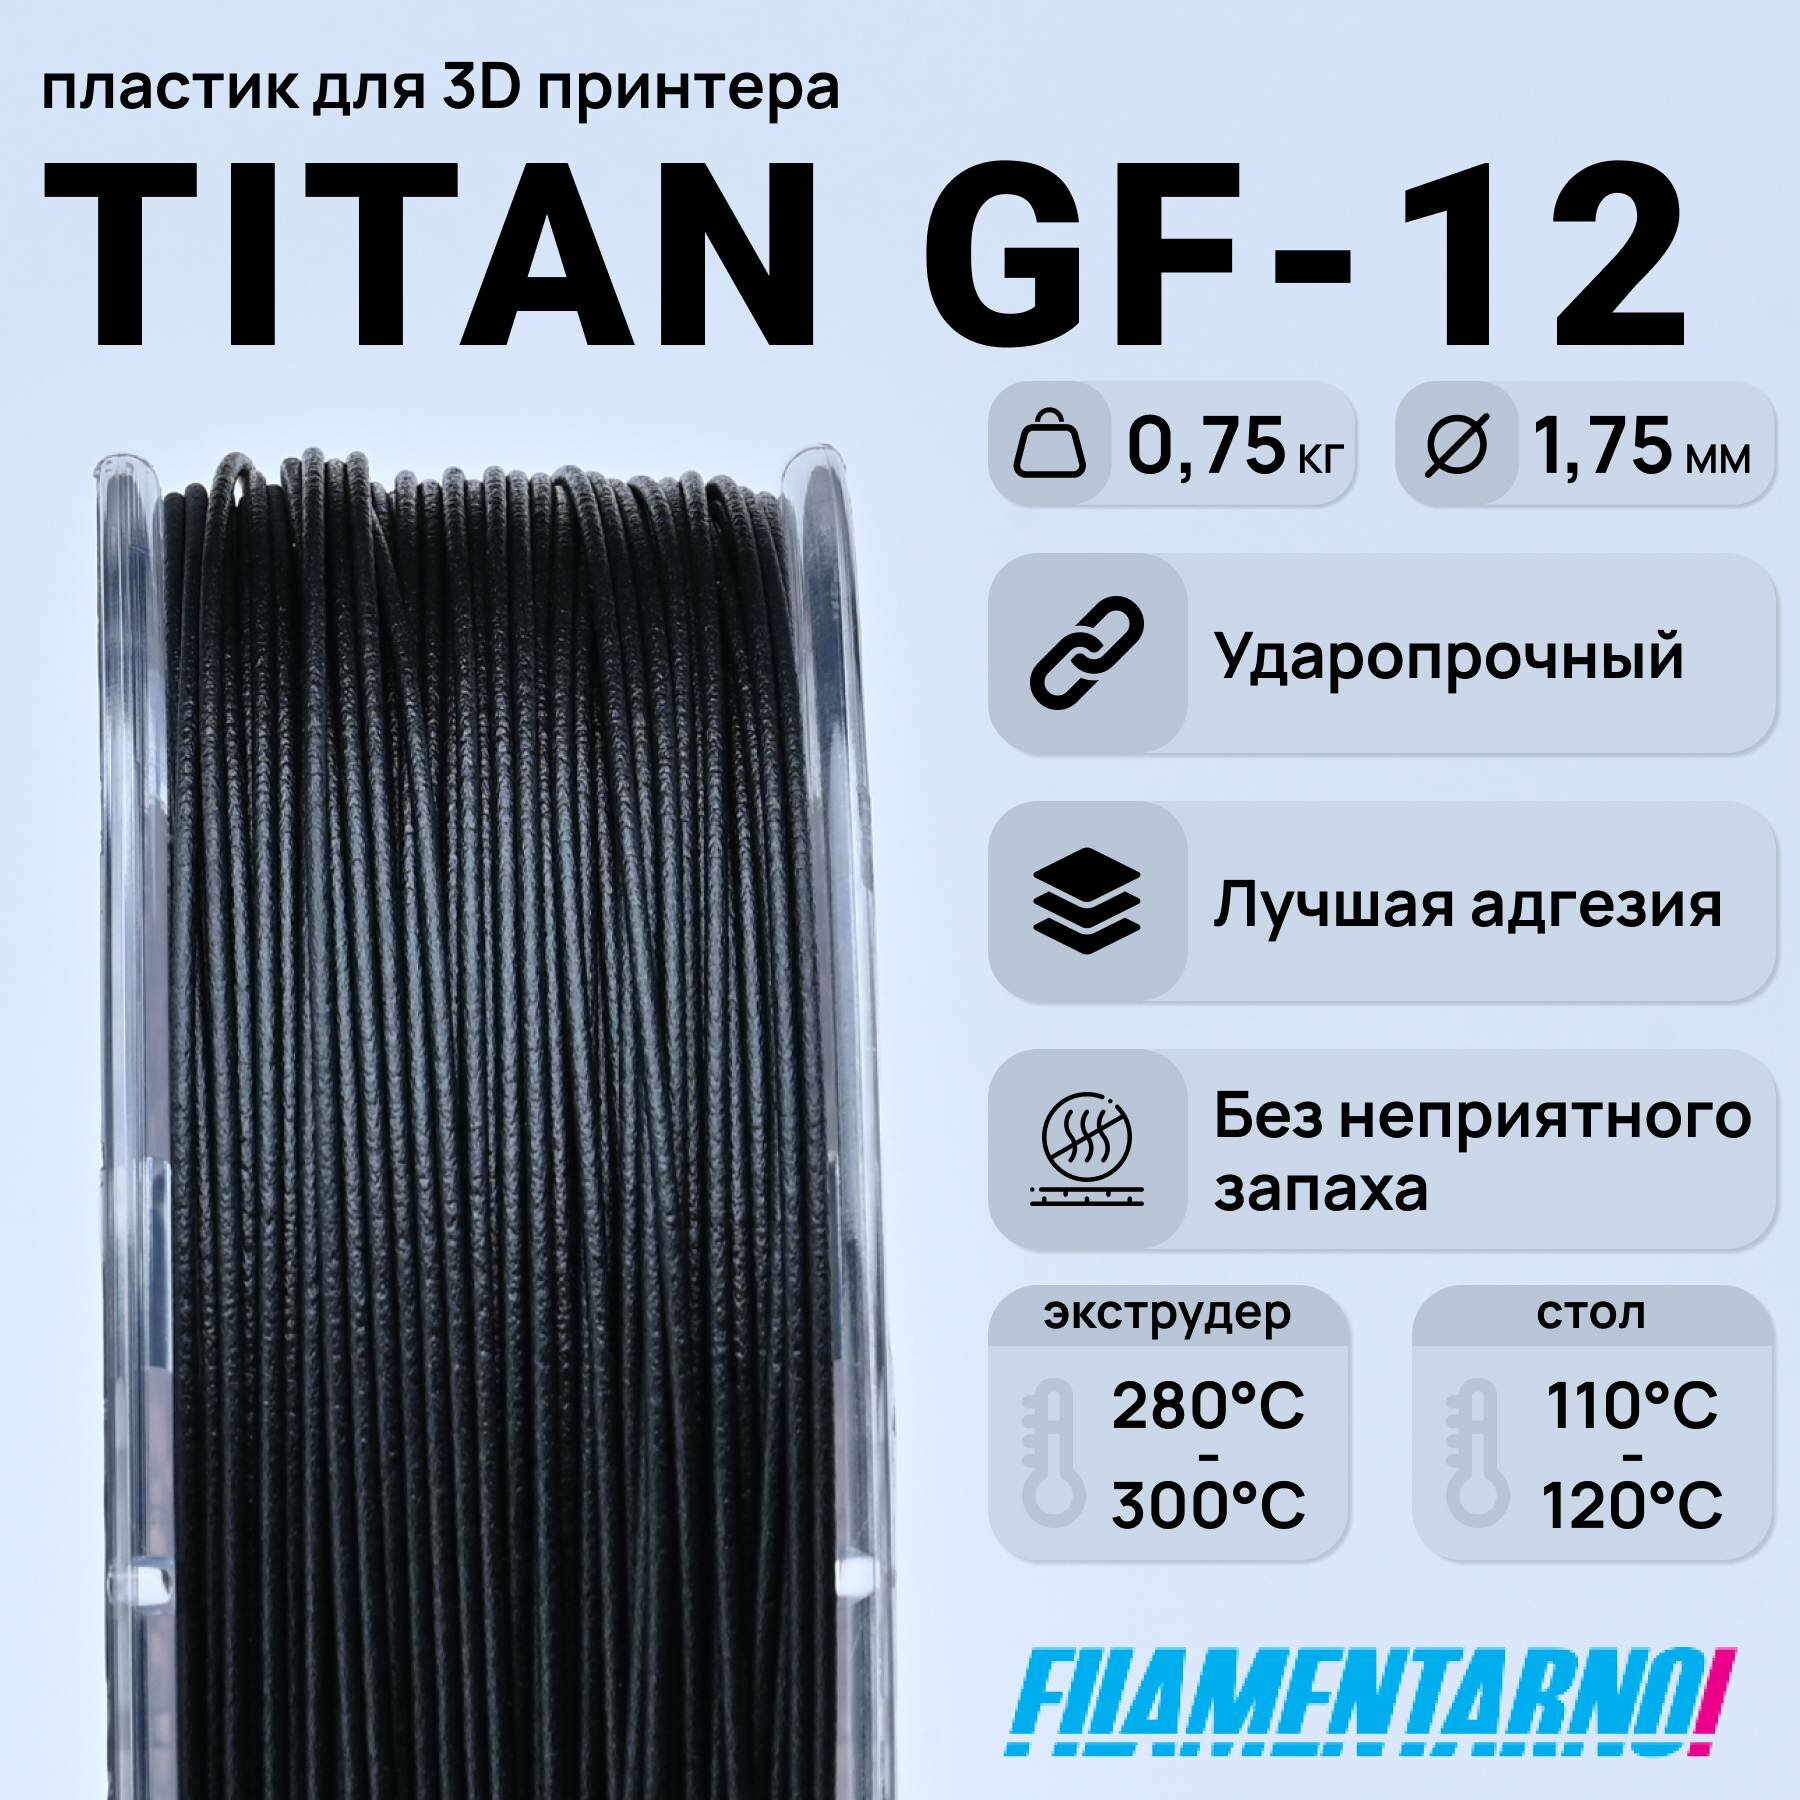 ABS Titan GF-12 черный 750 г, 1,75 мм, пластик Filamentarno для 3D-принтера